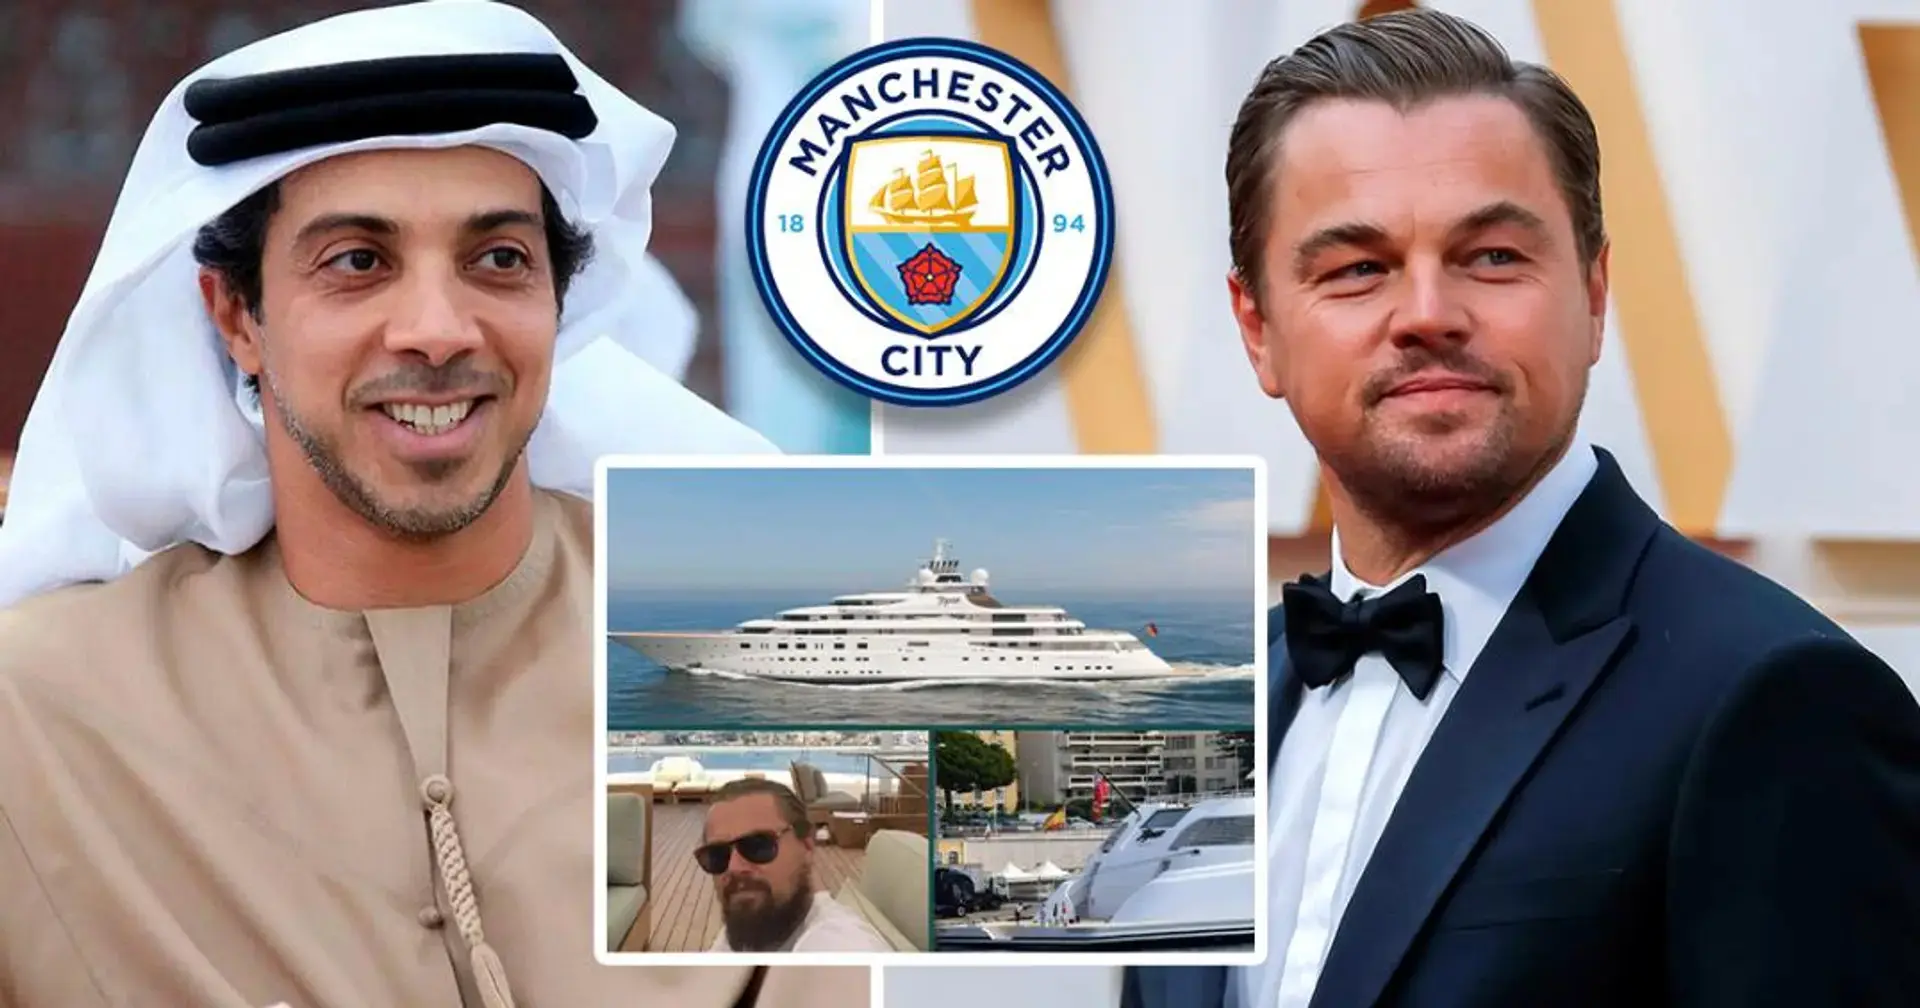 El propietario del Manchester City, Sheikh Mansour, una vez prestó su yate de £ 400 millones a Leonardo DiCaprio para ver la Copa del Mundo. 